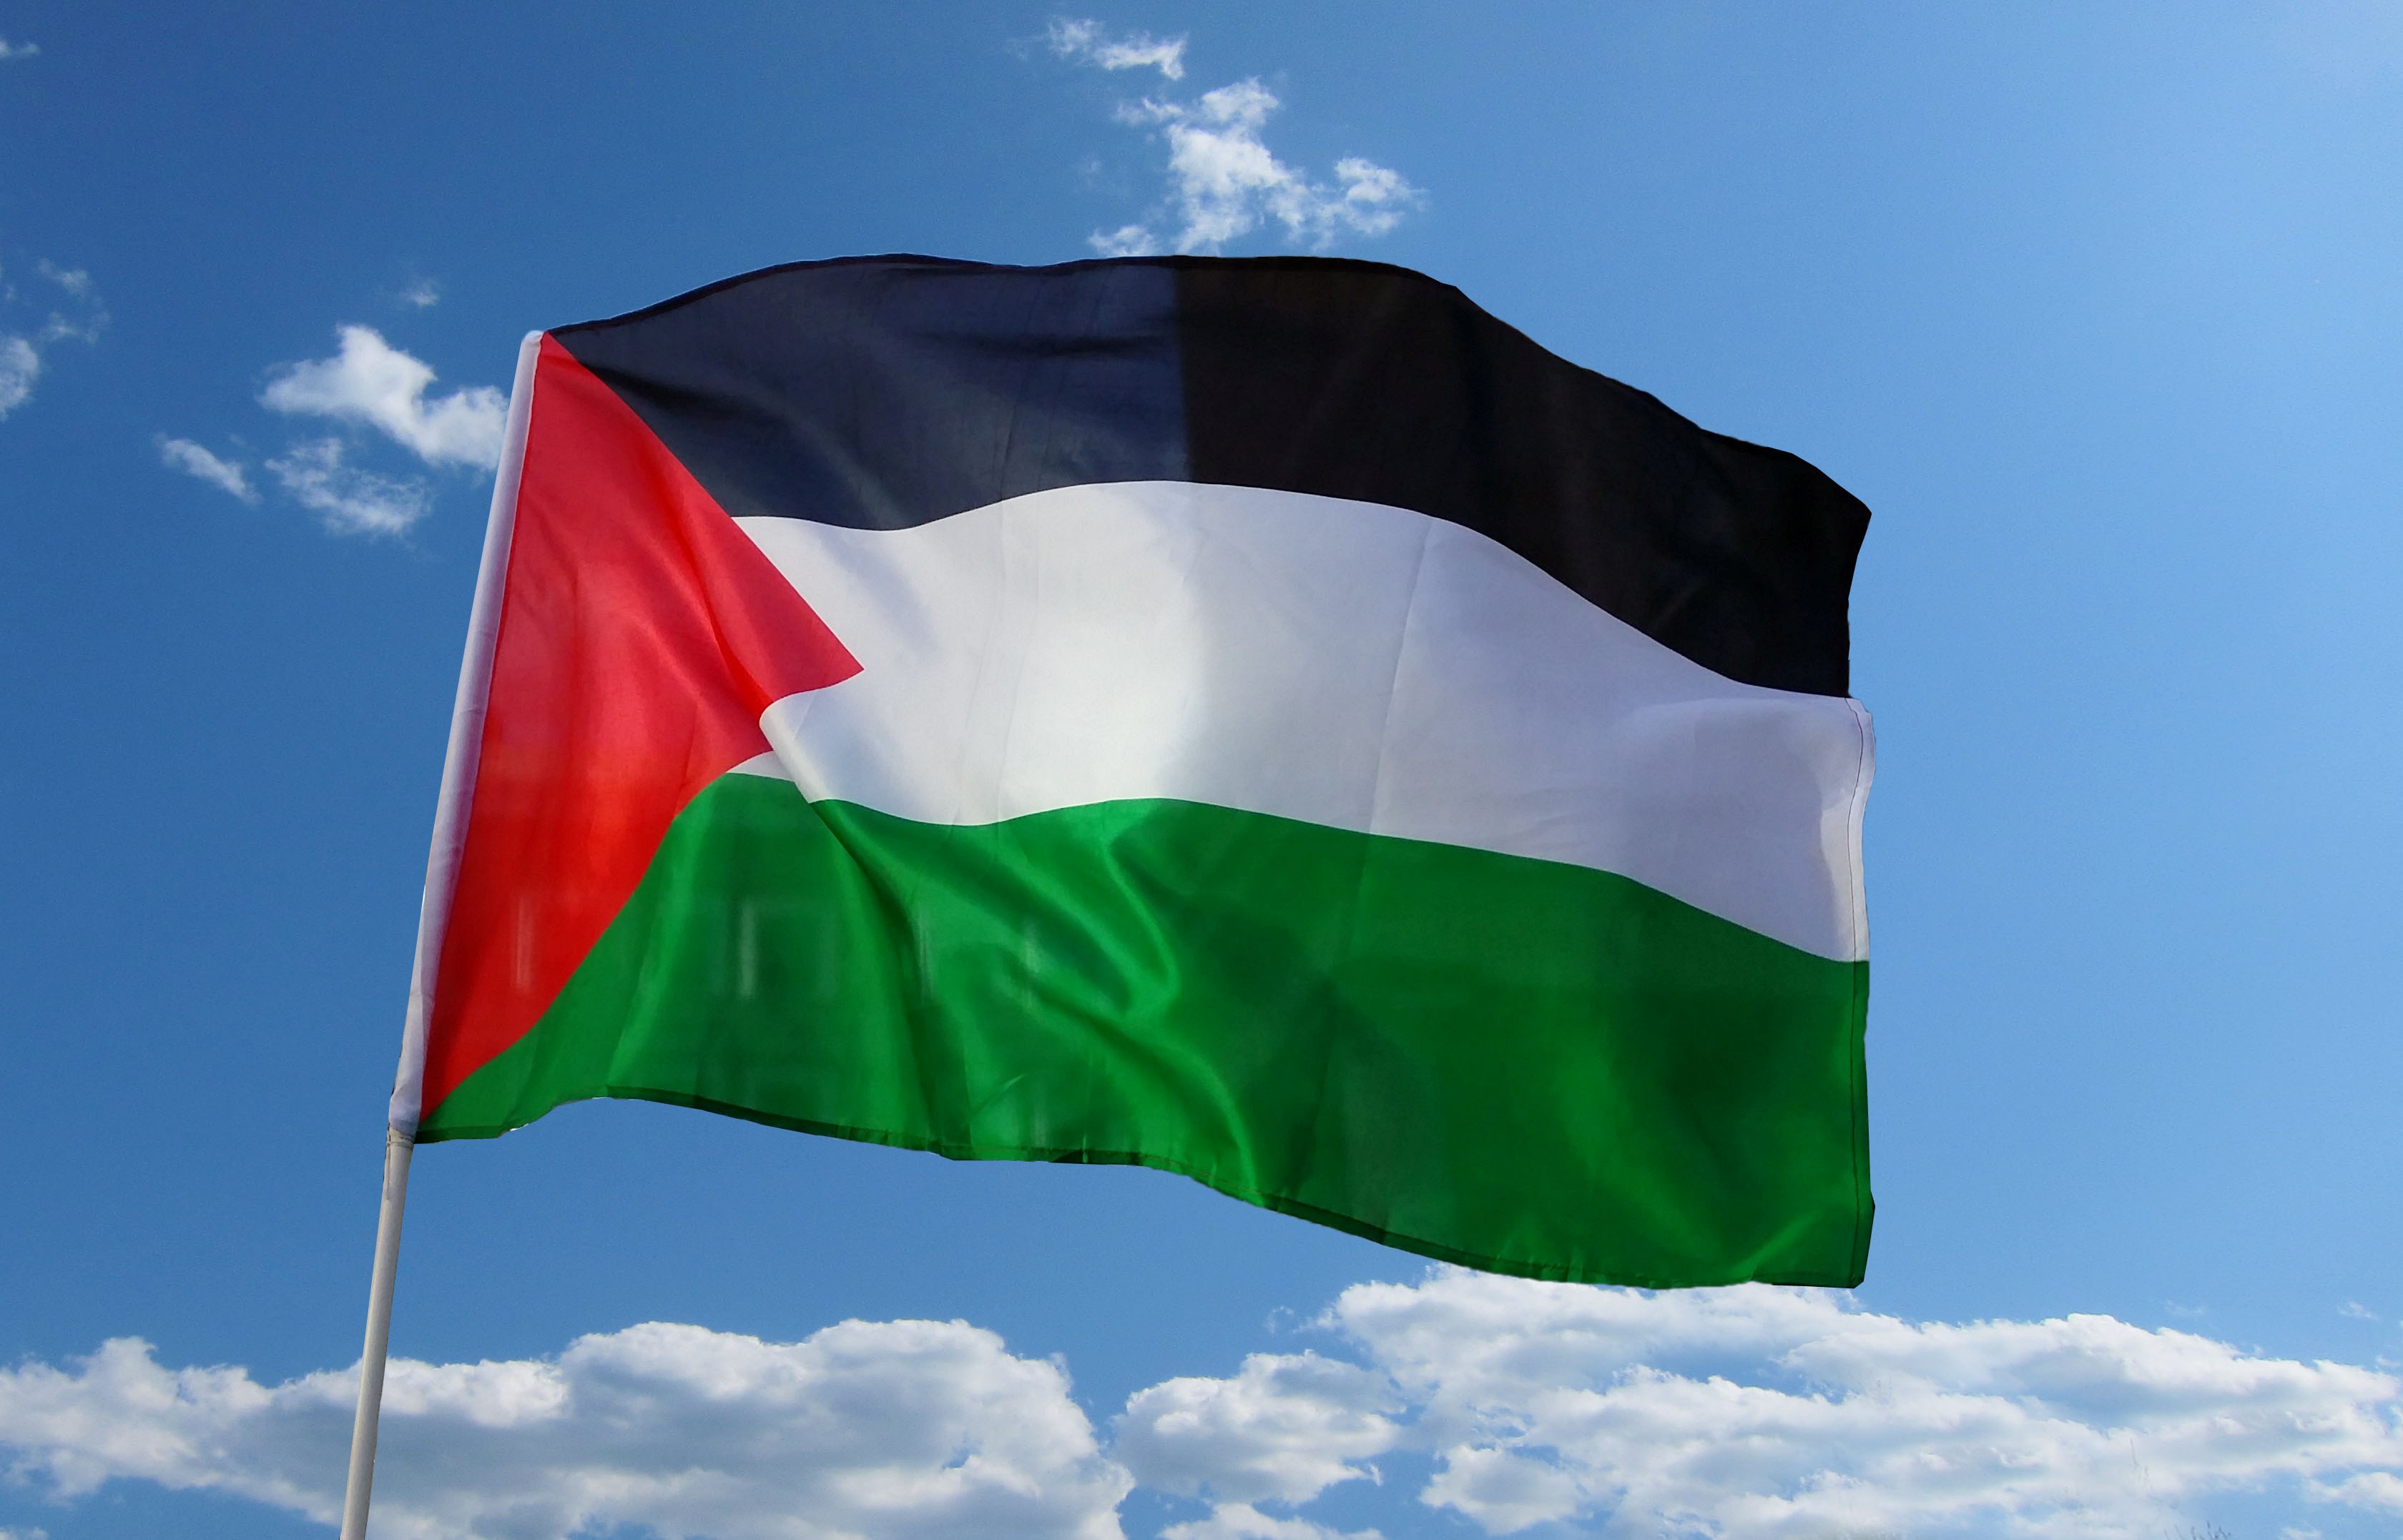 صور علم فلسطين رمزيات وخلفيات العلم الفلسطيني ميكساتك